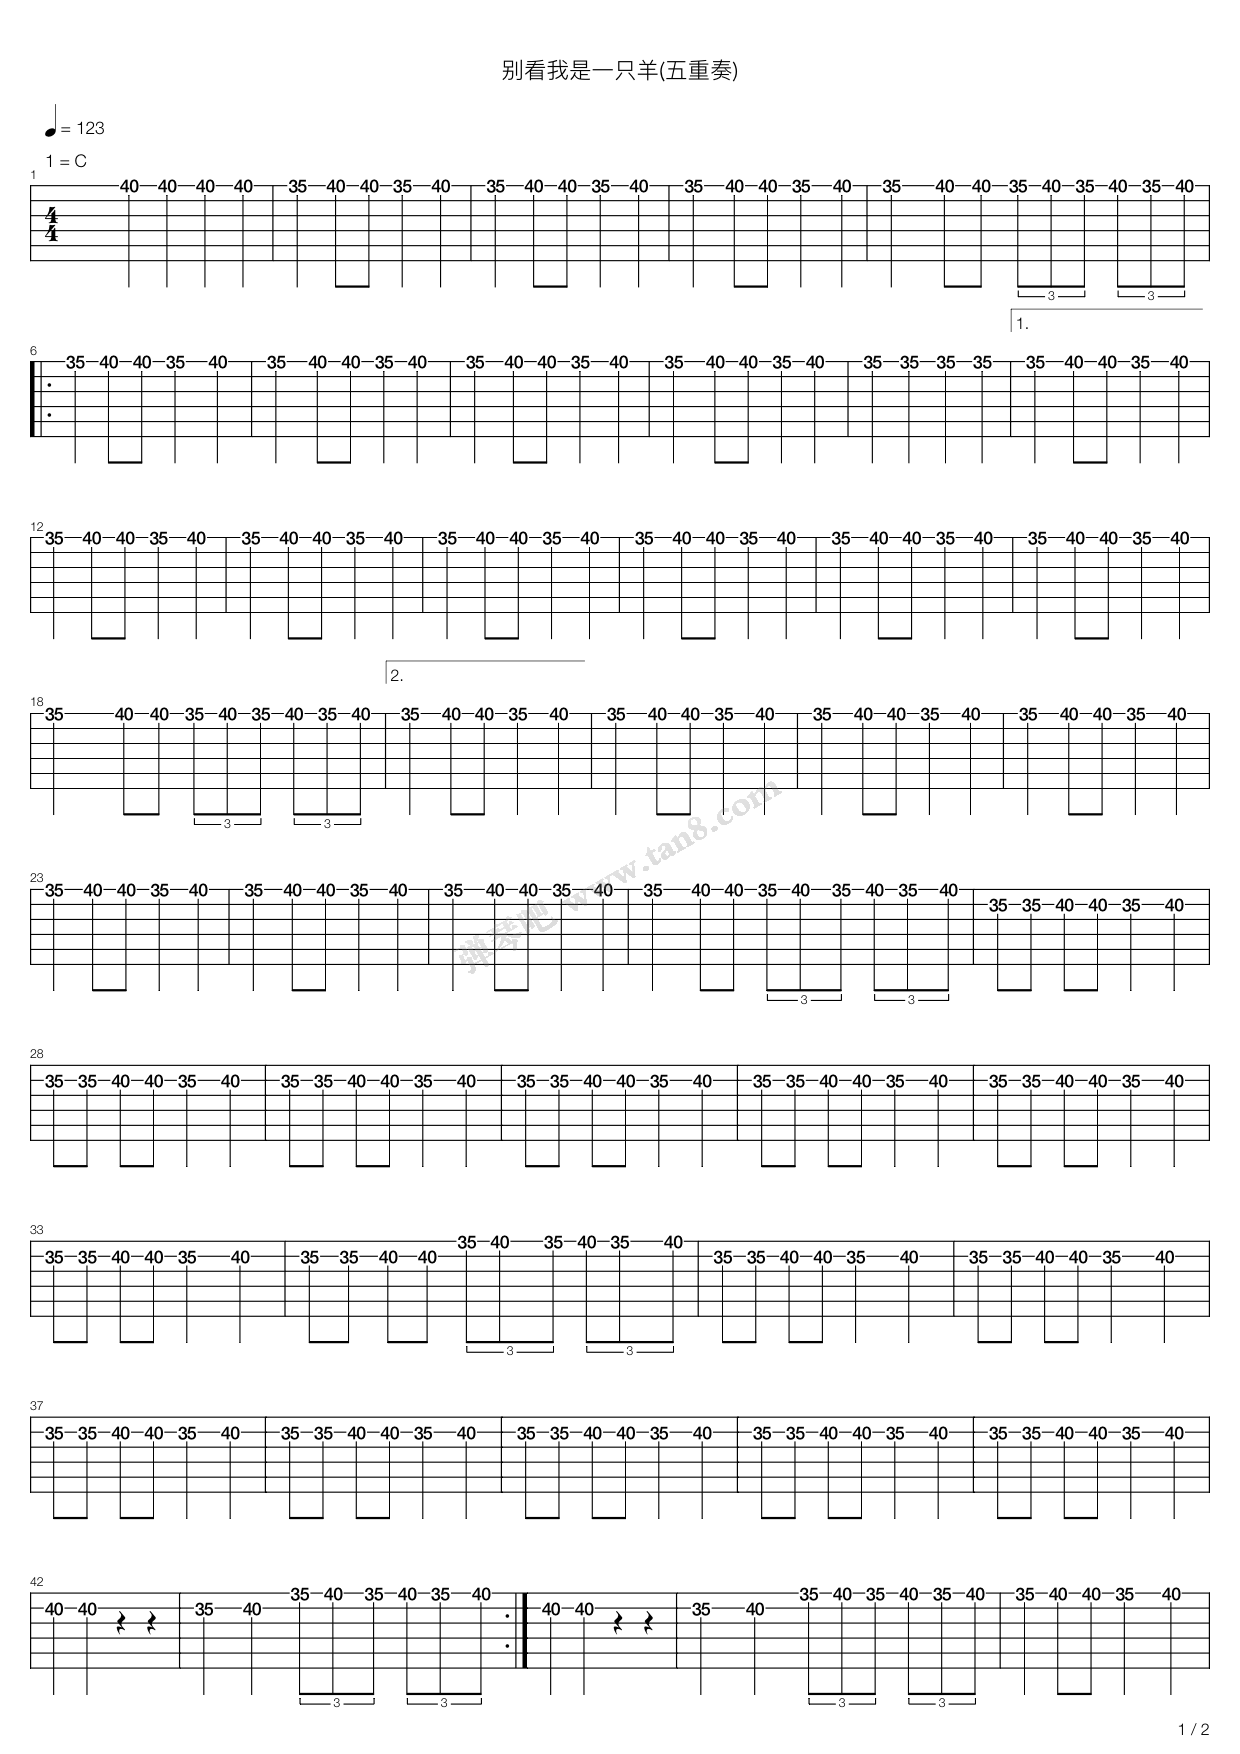 喜羊羊与灰太狼主题曲五线谱预览2-钢琴谱文件（五线谱、双手简谱、数字谱、Midi、PDF）免费下载